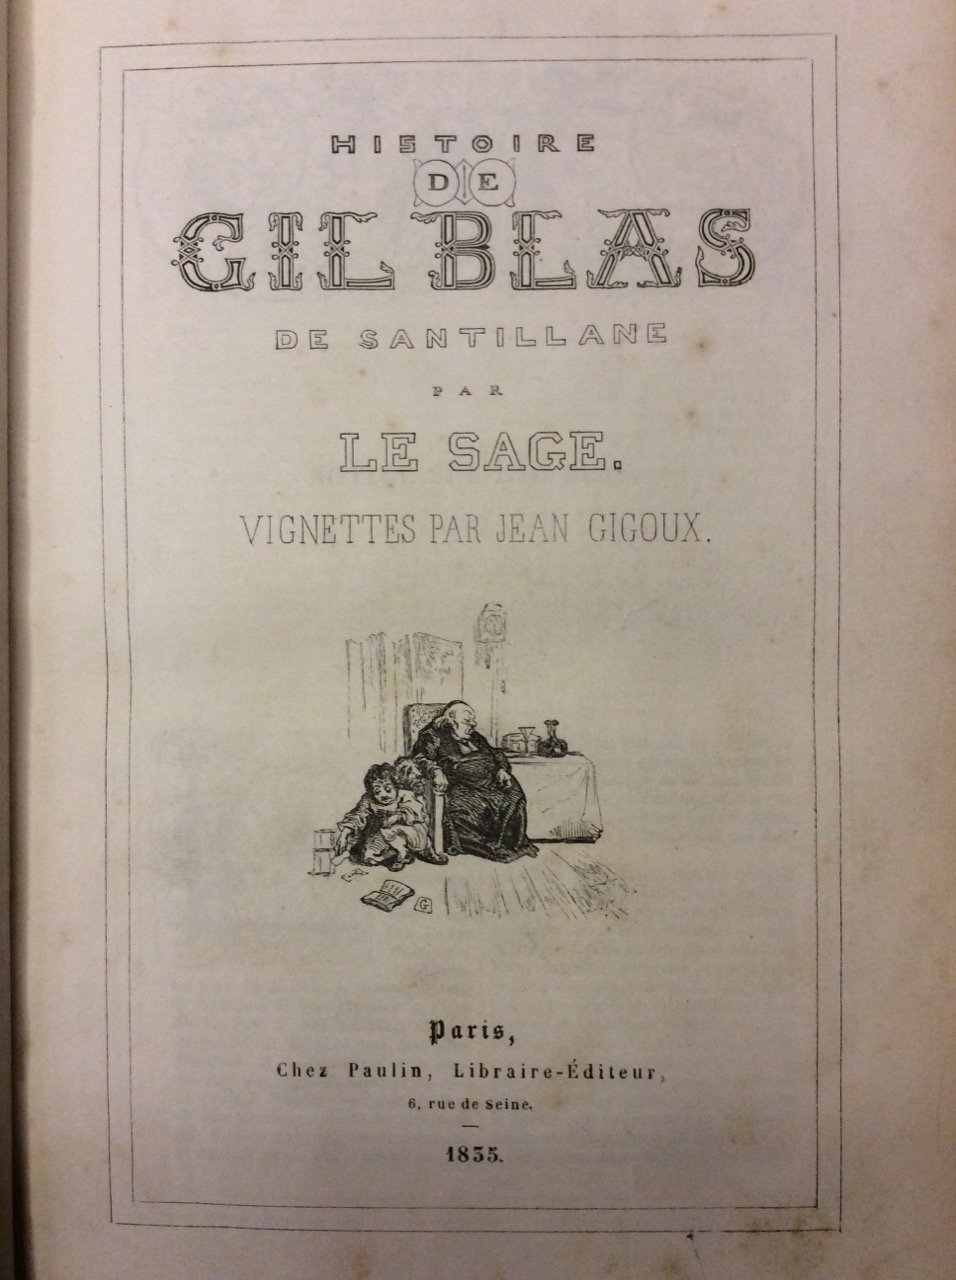 HISTOIRE DE GIL BLAS DE SANTILLANE.